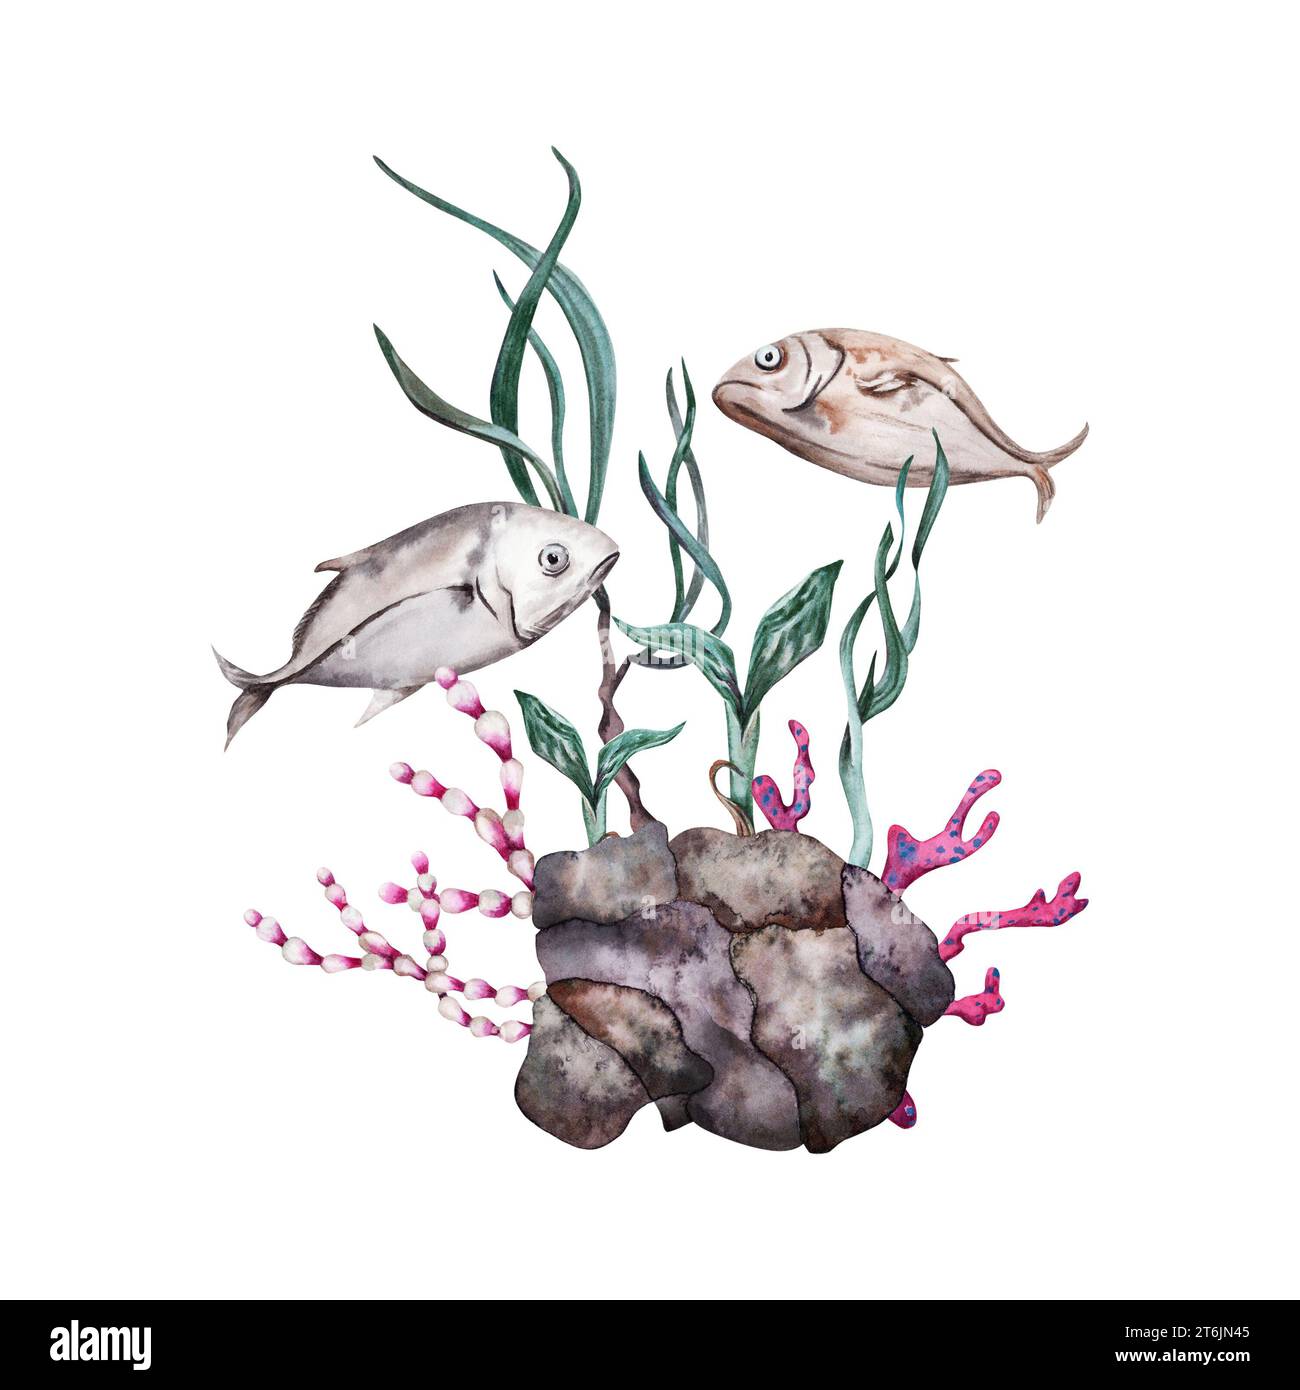 Zwei tropische Fische schwimmen über Rifffelsen, rote Korallen, Pflanzen und grüne Algen. Handgezeichnete Aquarellillustration isoliert auf weißem Hintergrund. Stockfoto